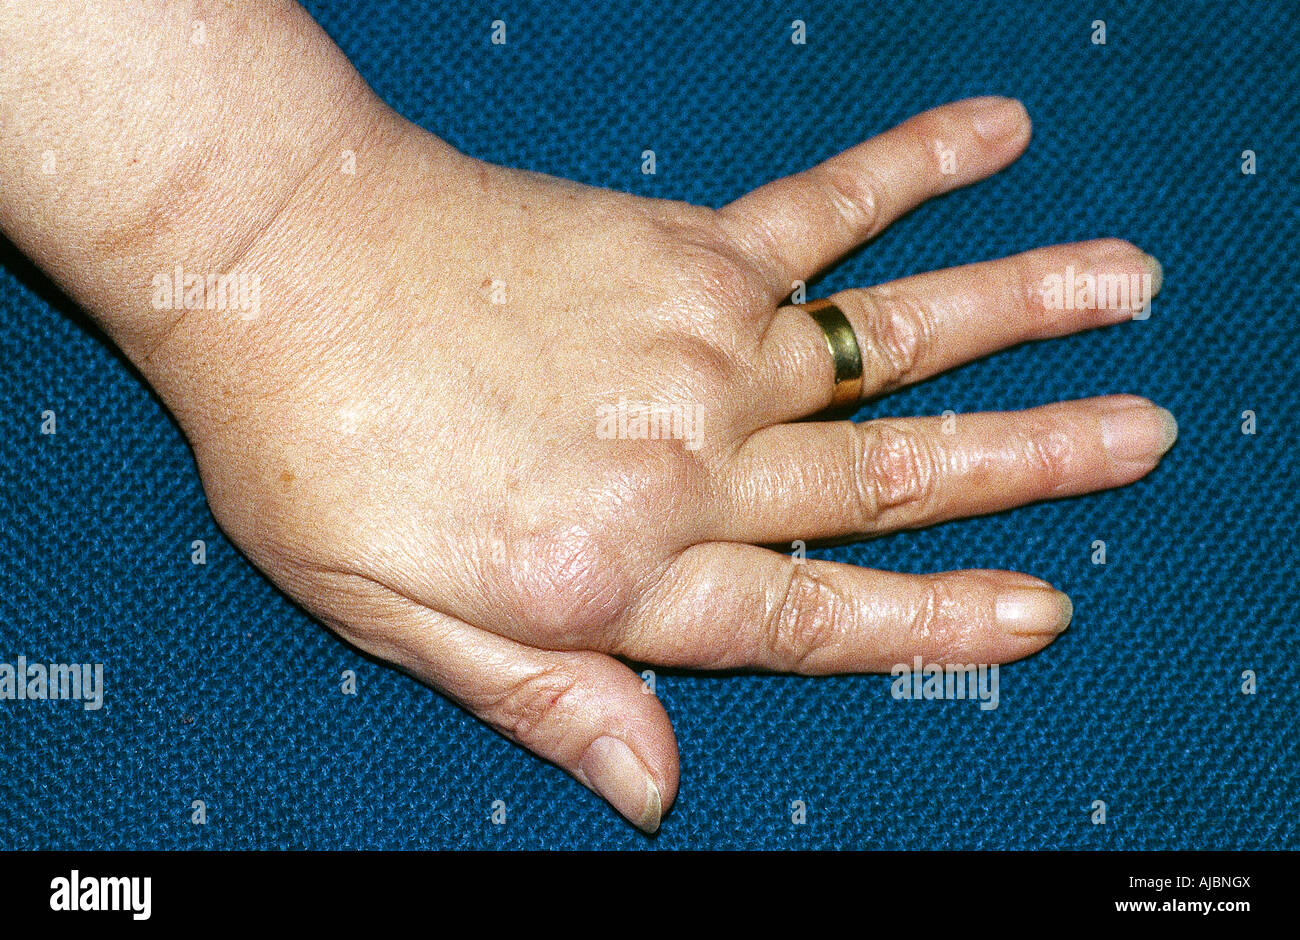 L'arthrite rhumatoïde grave menant à la dérive ulnaire, avant remplacement de l'articulation MCP Banque D'Images